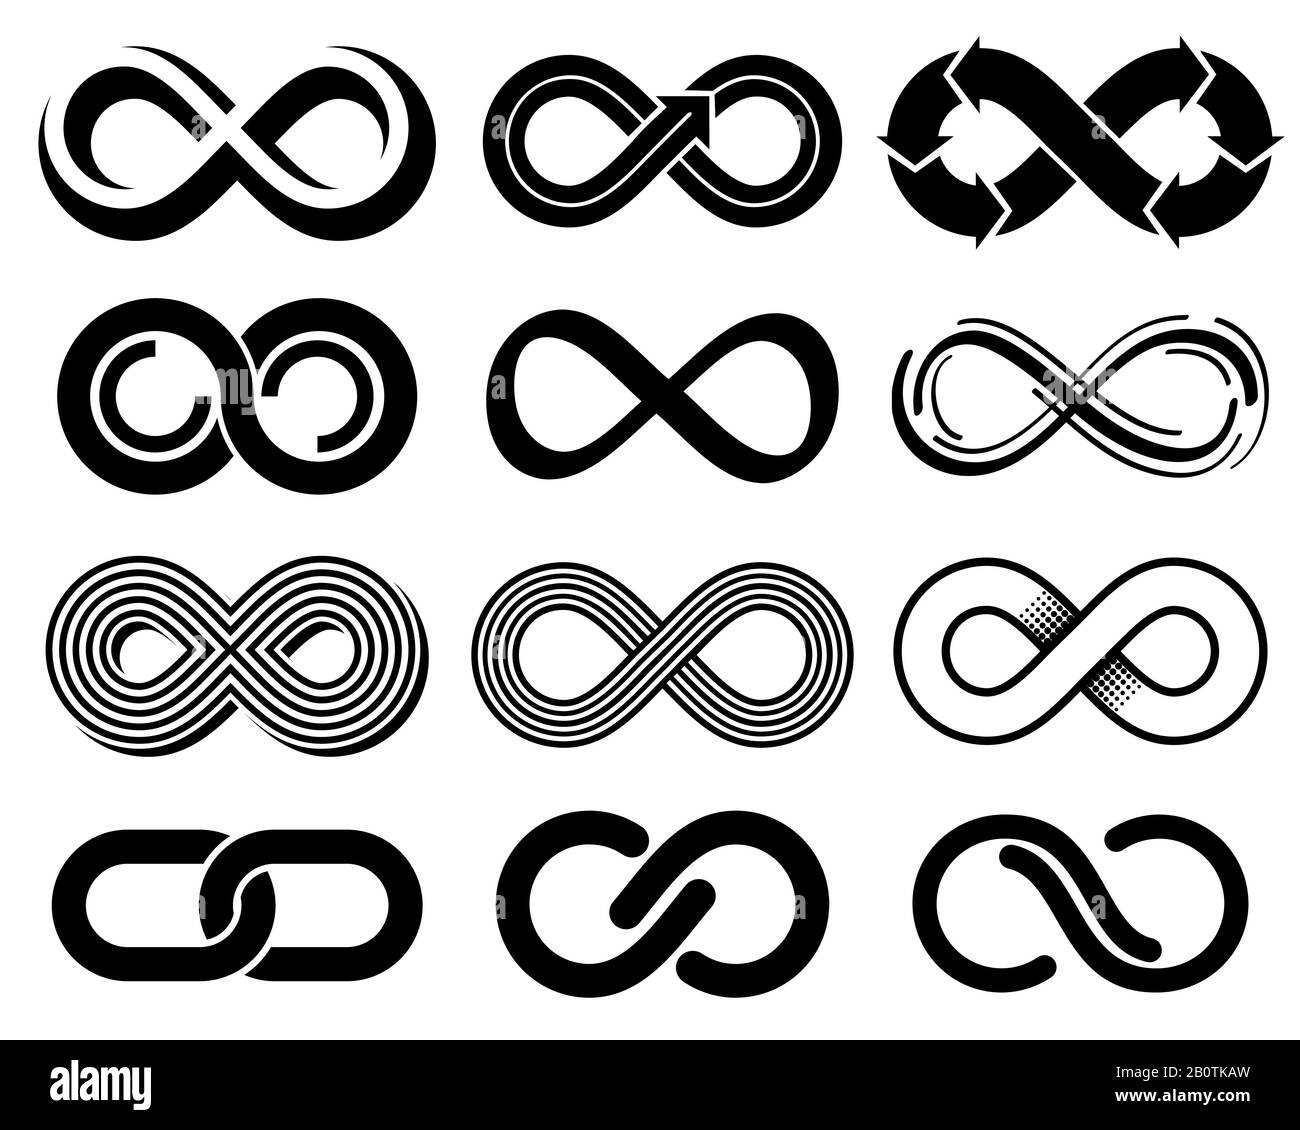 Unendliche Vektorsymbole. Mobius Loop Icons. Darstellung von unendlichen Zeichen- und Ewigkeitslinien Stock Vektor